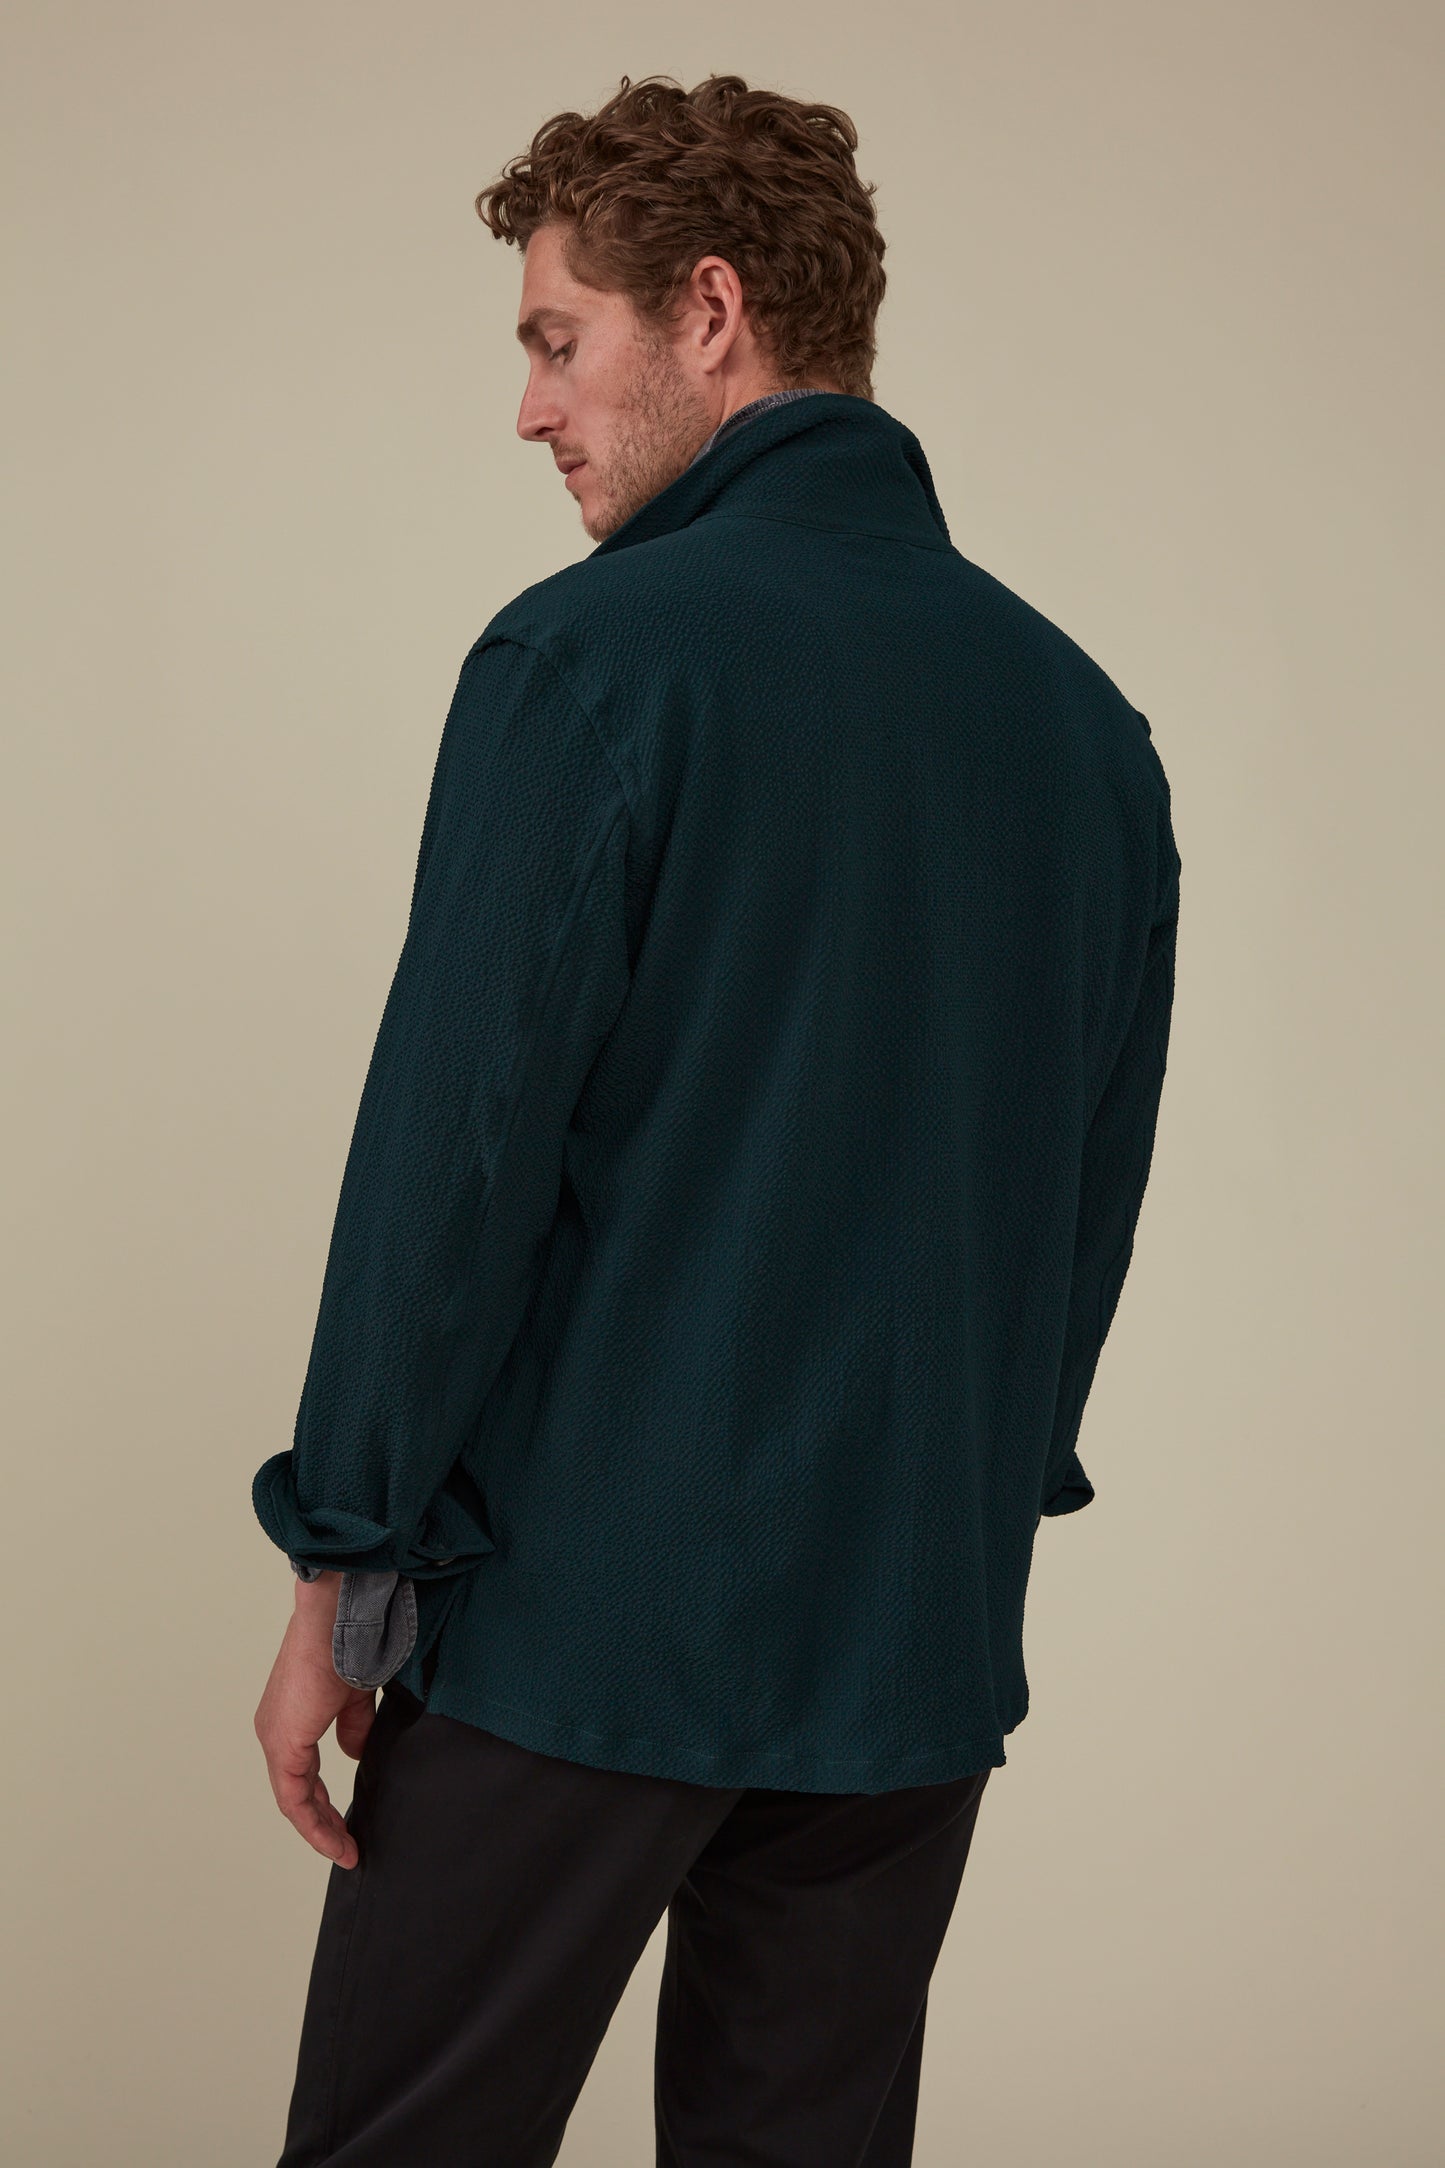 Clifton Seersucker Overshirt Virgin Wool and Mohair- Emerald